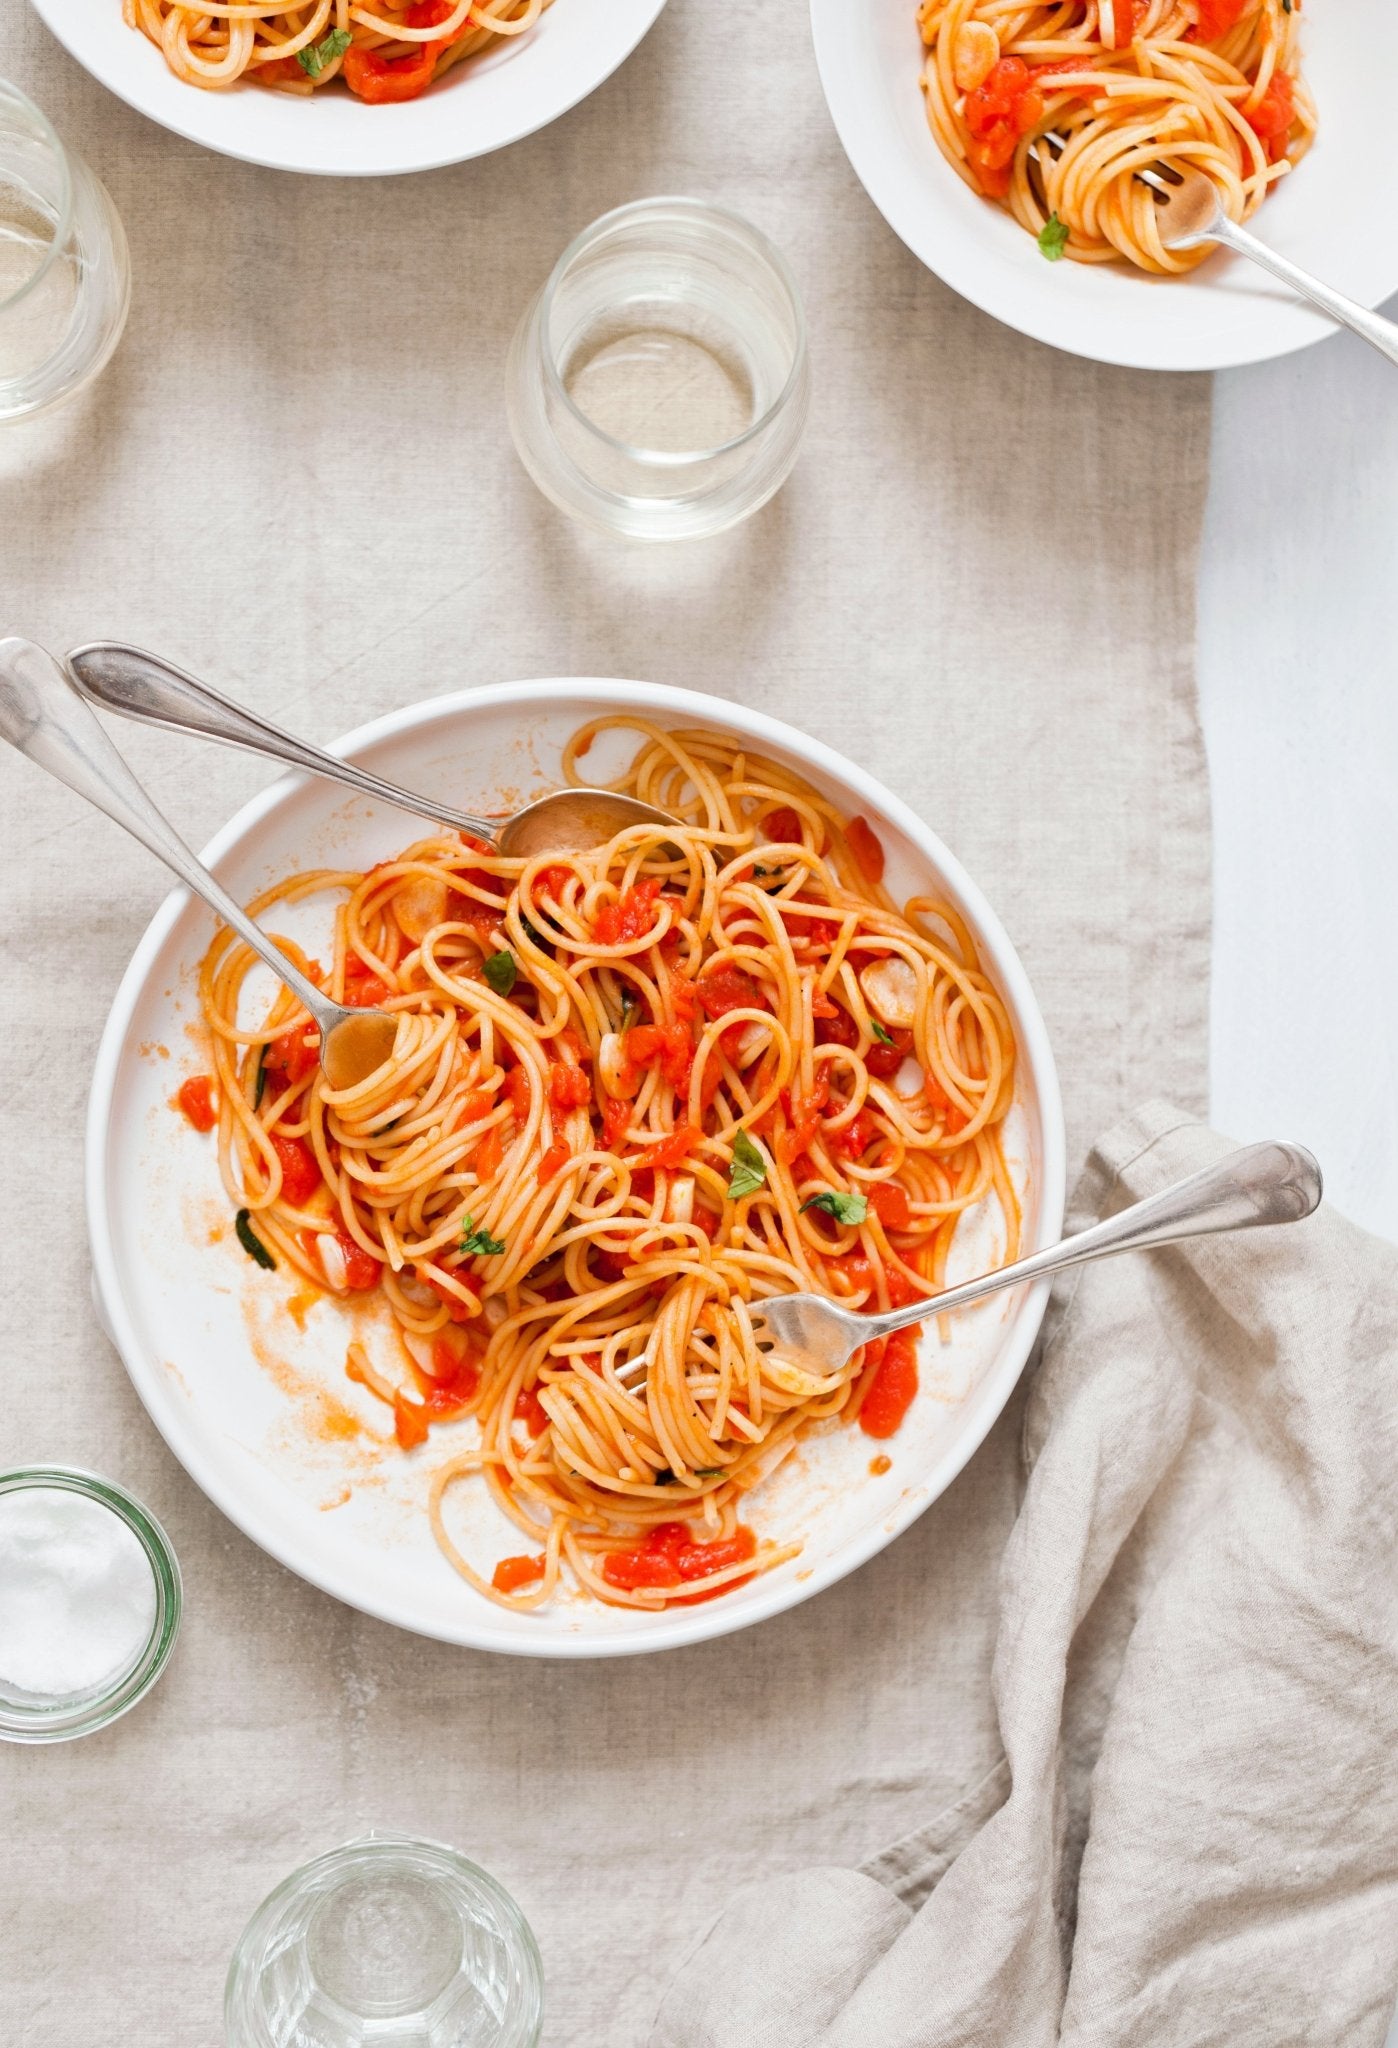 Spaghetti al pomodoro fresco. An Italian recipe, by our friend Valeria Necchio - Feast Italy